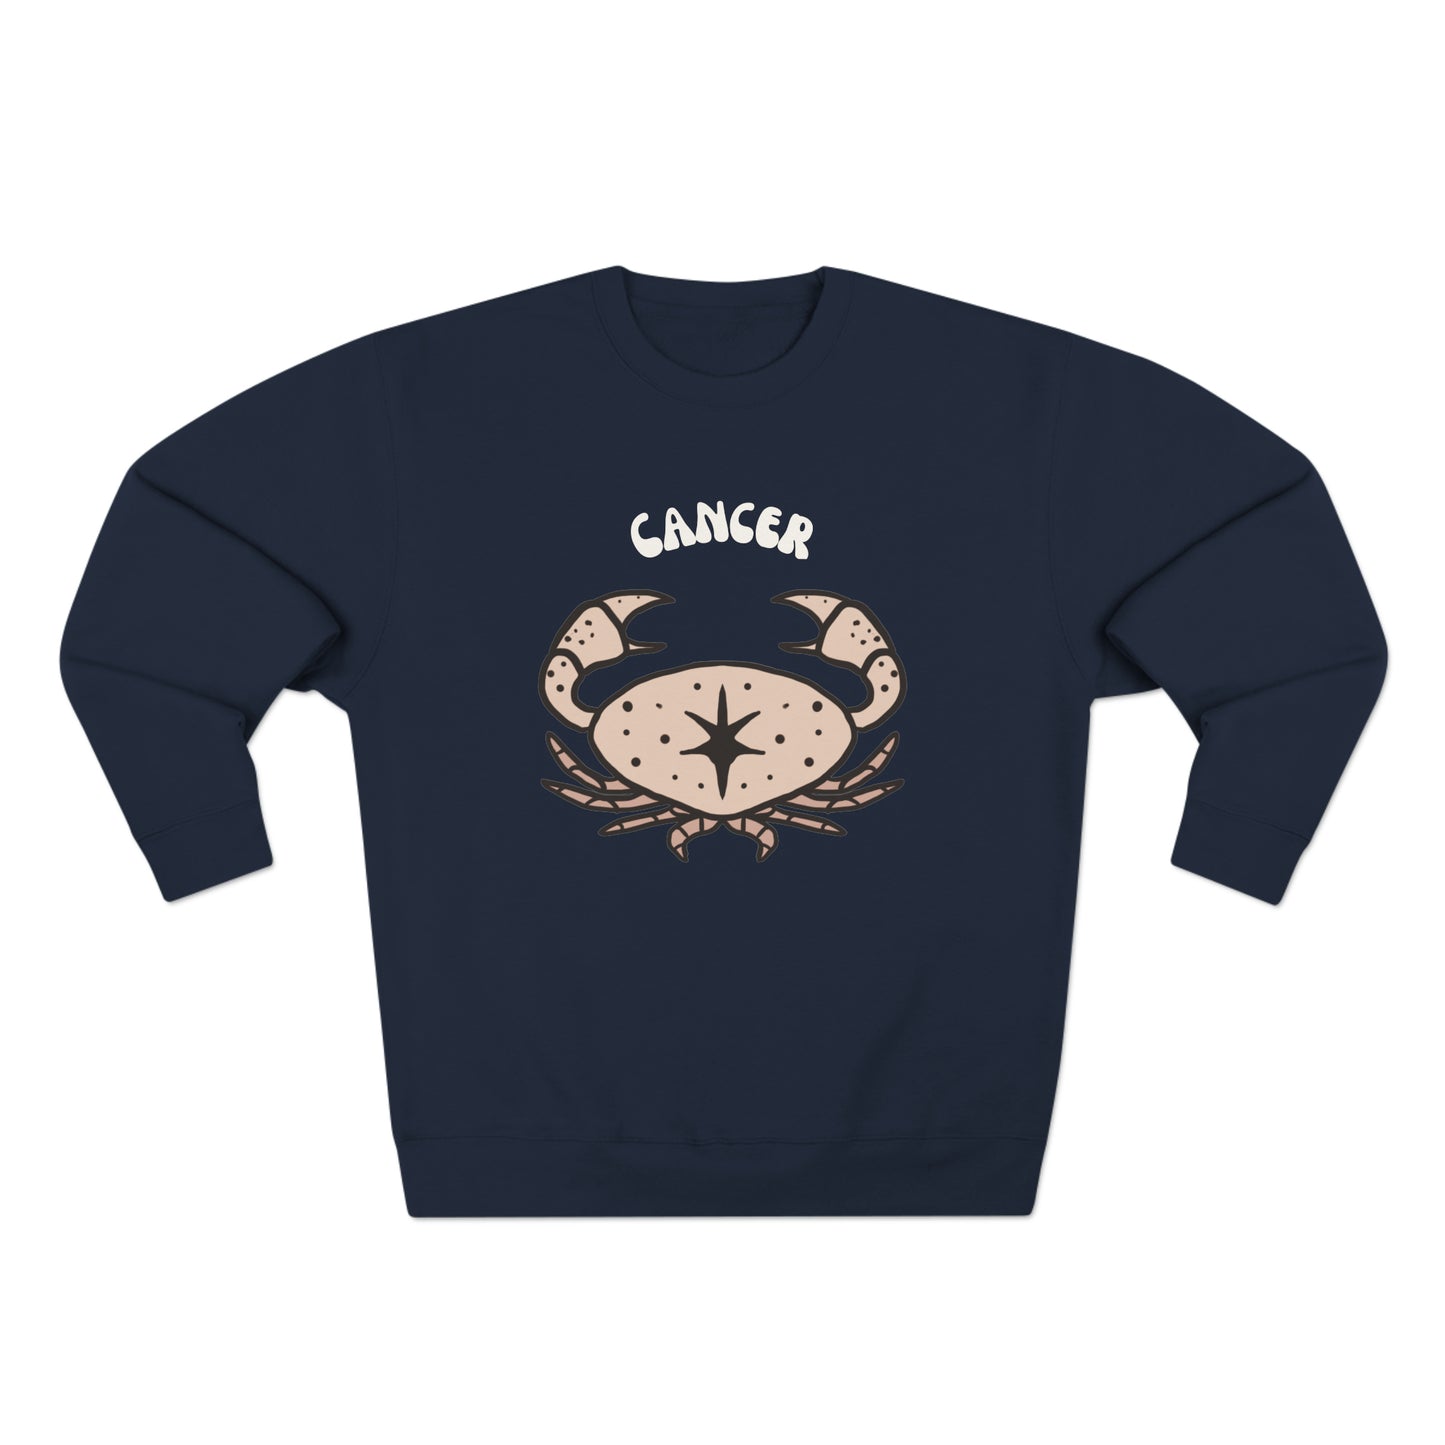 Cancer Premium Sweatshirt